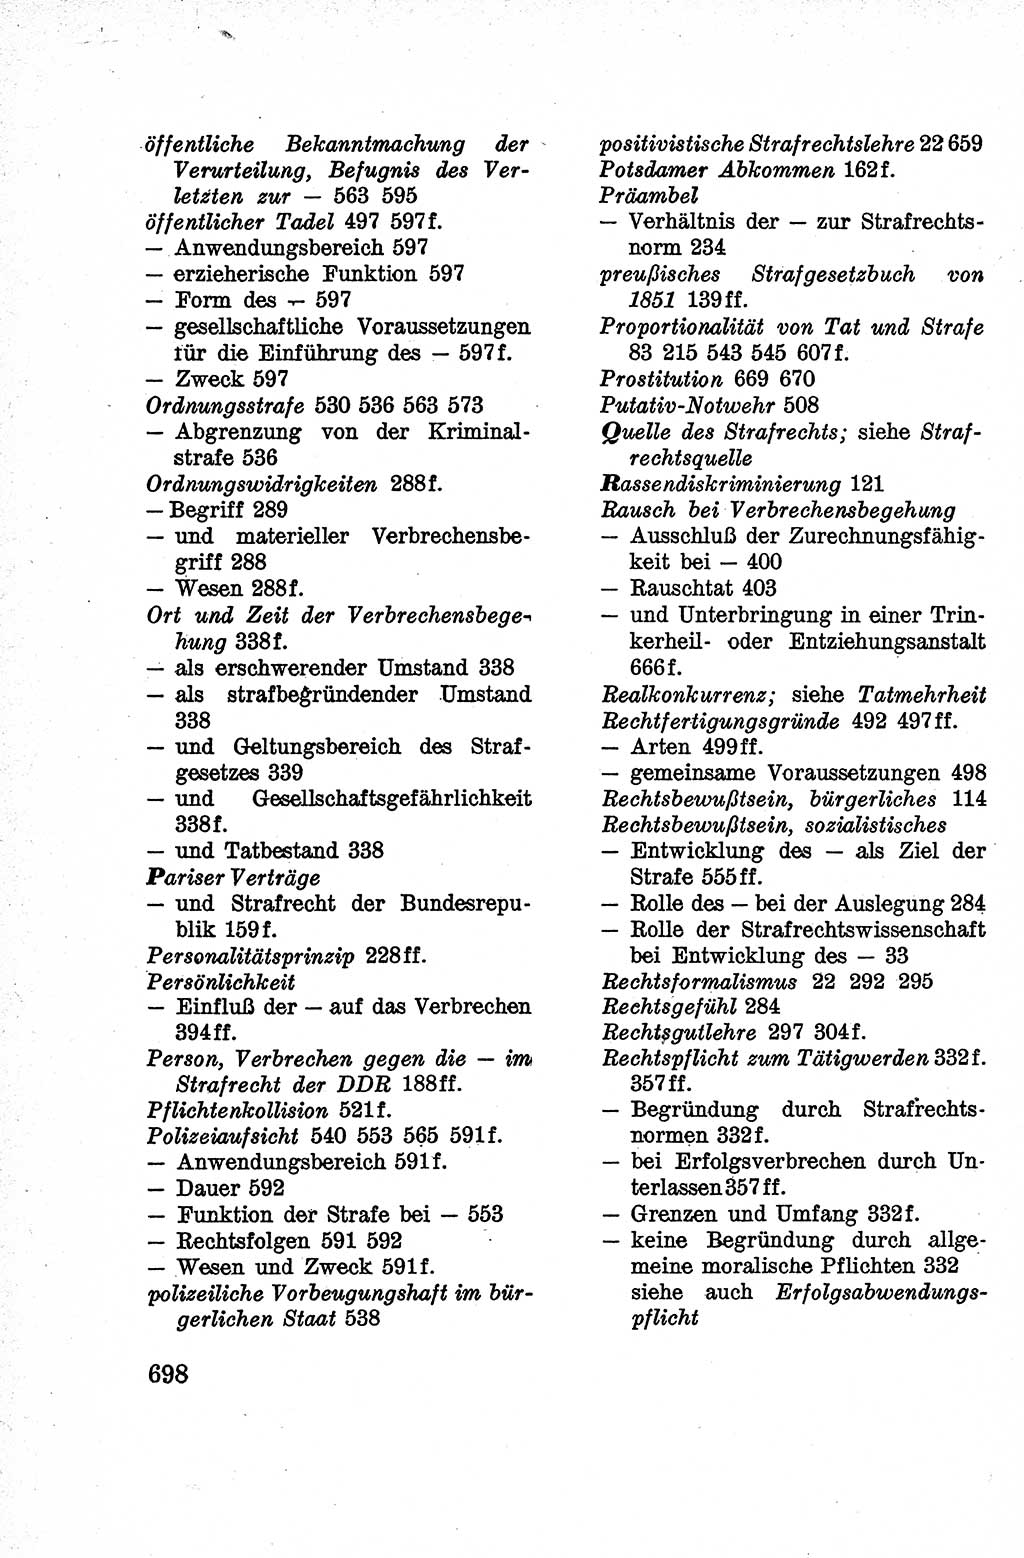 Lehrbuch des Strafrechts der Deutschen Demokratischen Republik (DDR), Allgemeiner Teil 1959, Seite 698 (Lb. Strafr. DDR AT 1959, S. 698)